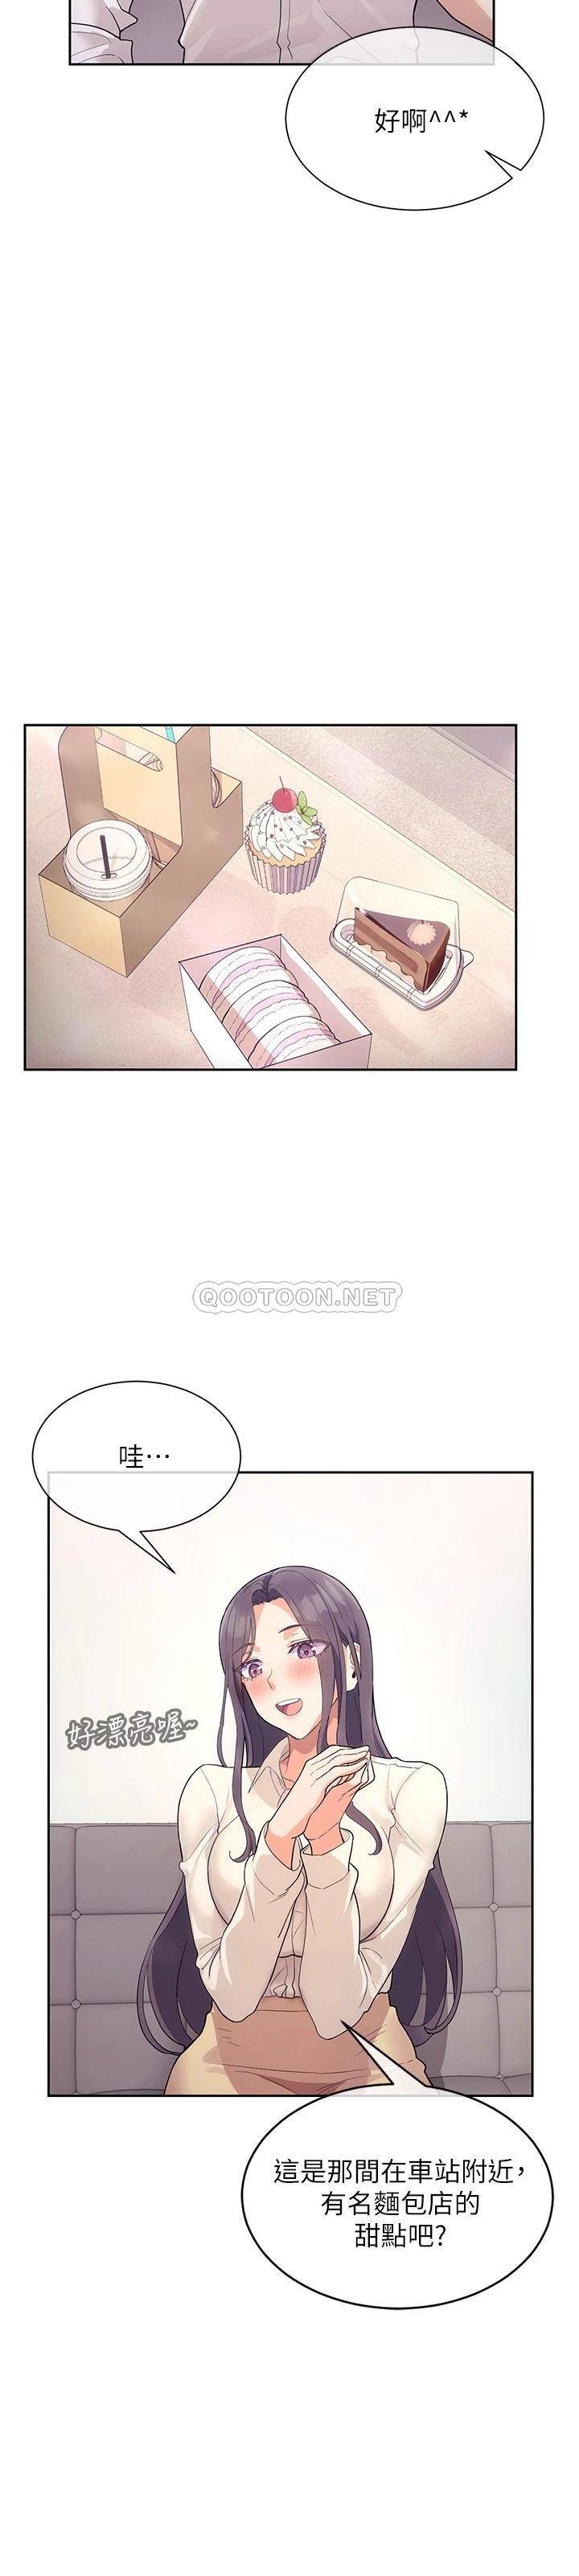 韩国污漫画 現上教學 第4话第一堂实作课:清纯系女编辑 3